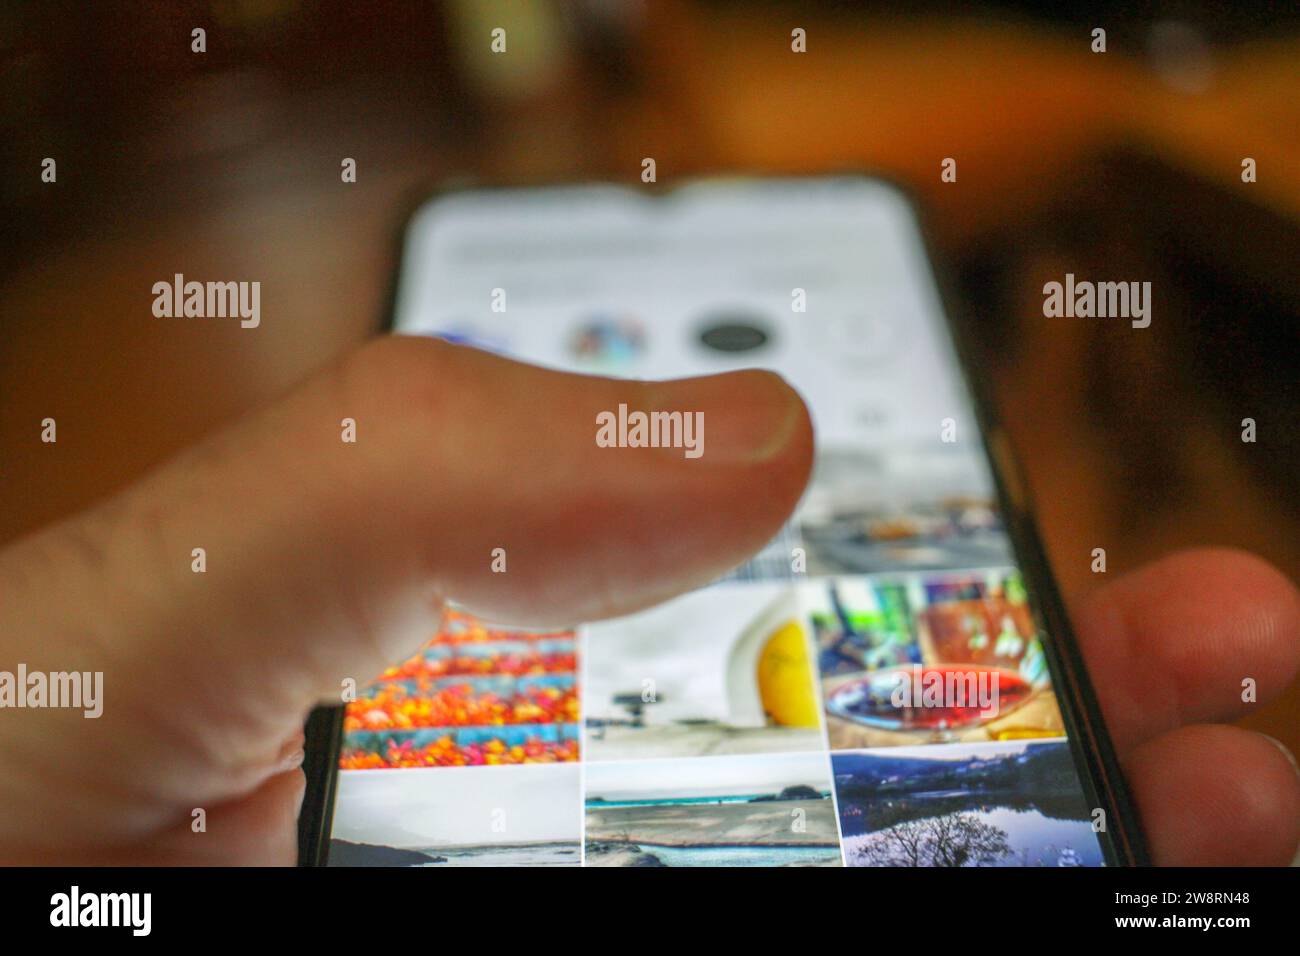 Digitale Verbindung: Eine Berührung auf dem mobilen Bildschirm Stockfoto